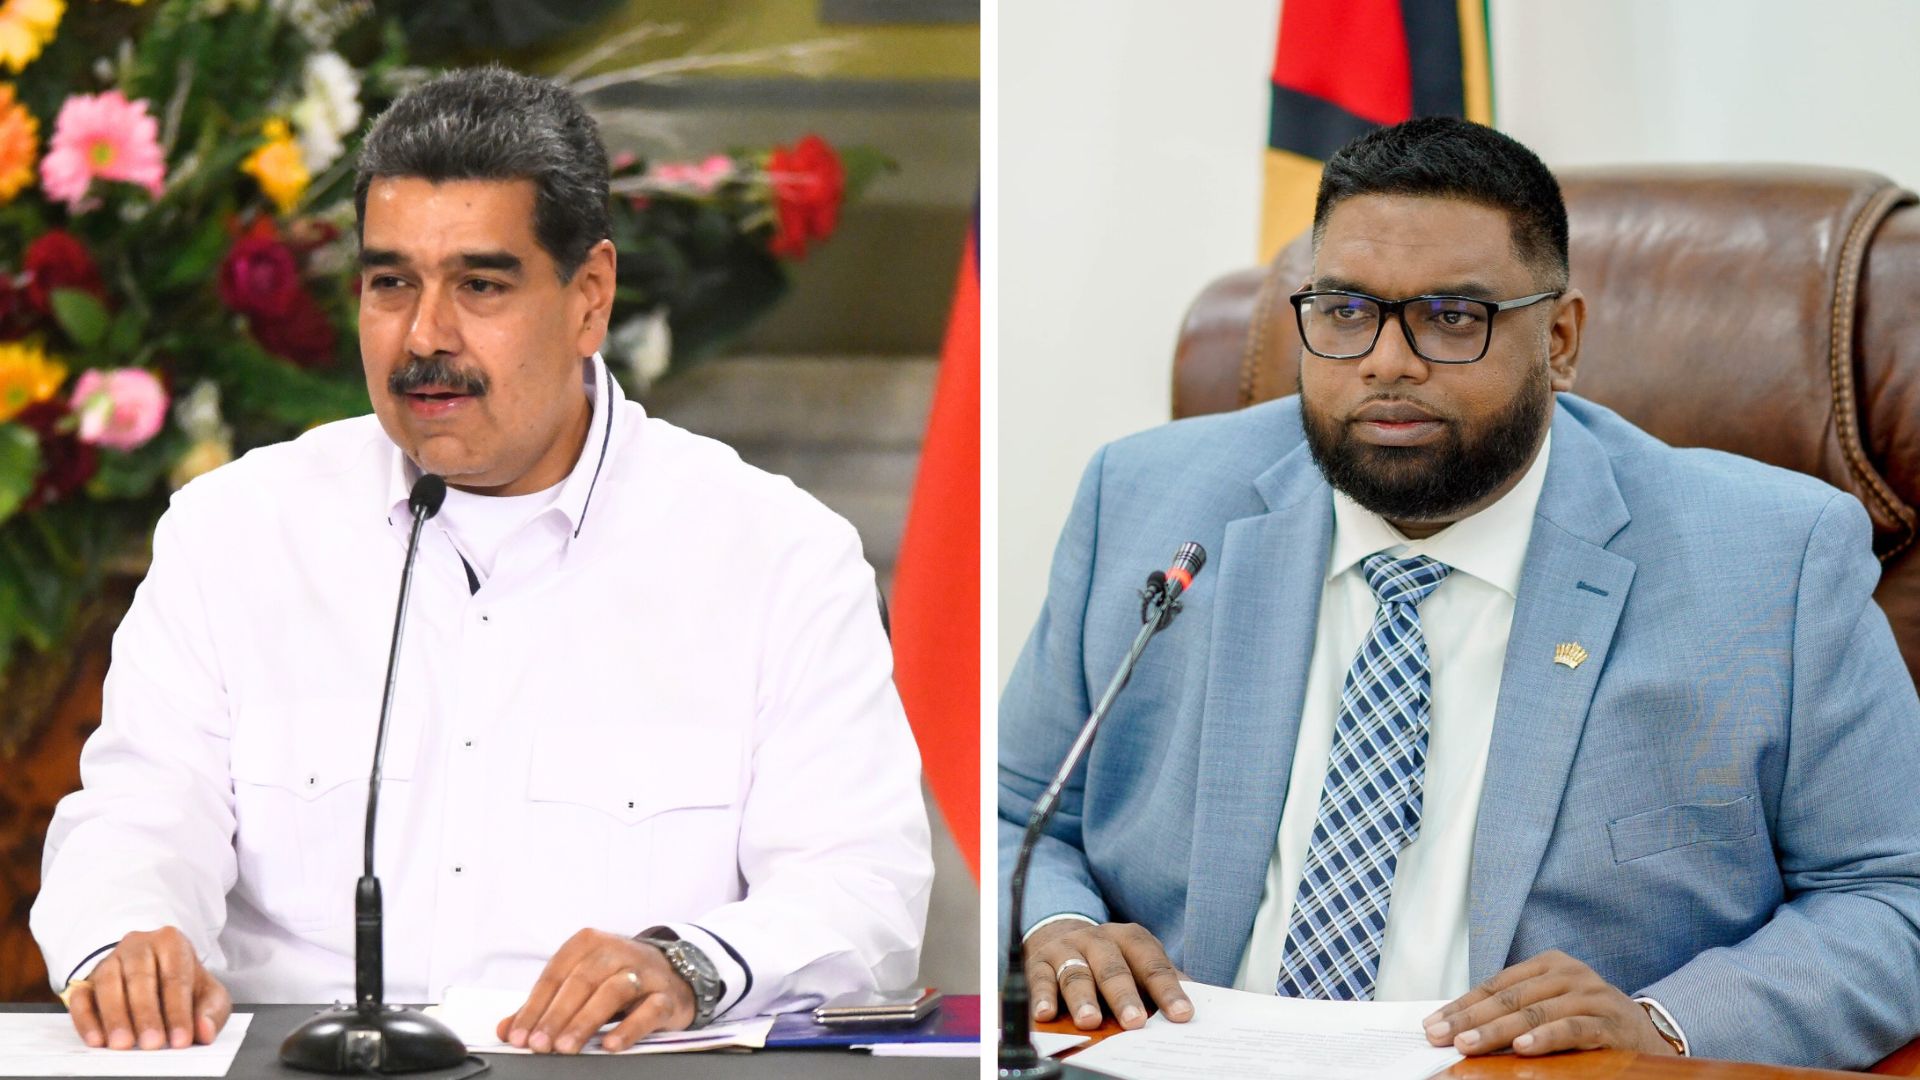 Encuentro cara a cara entre los presidentes de Venezuela y Guyana